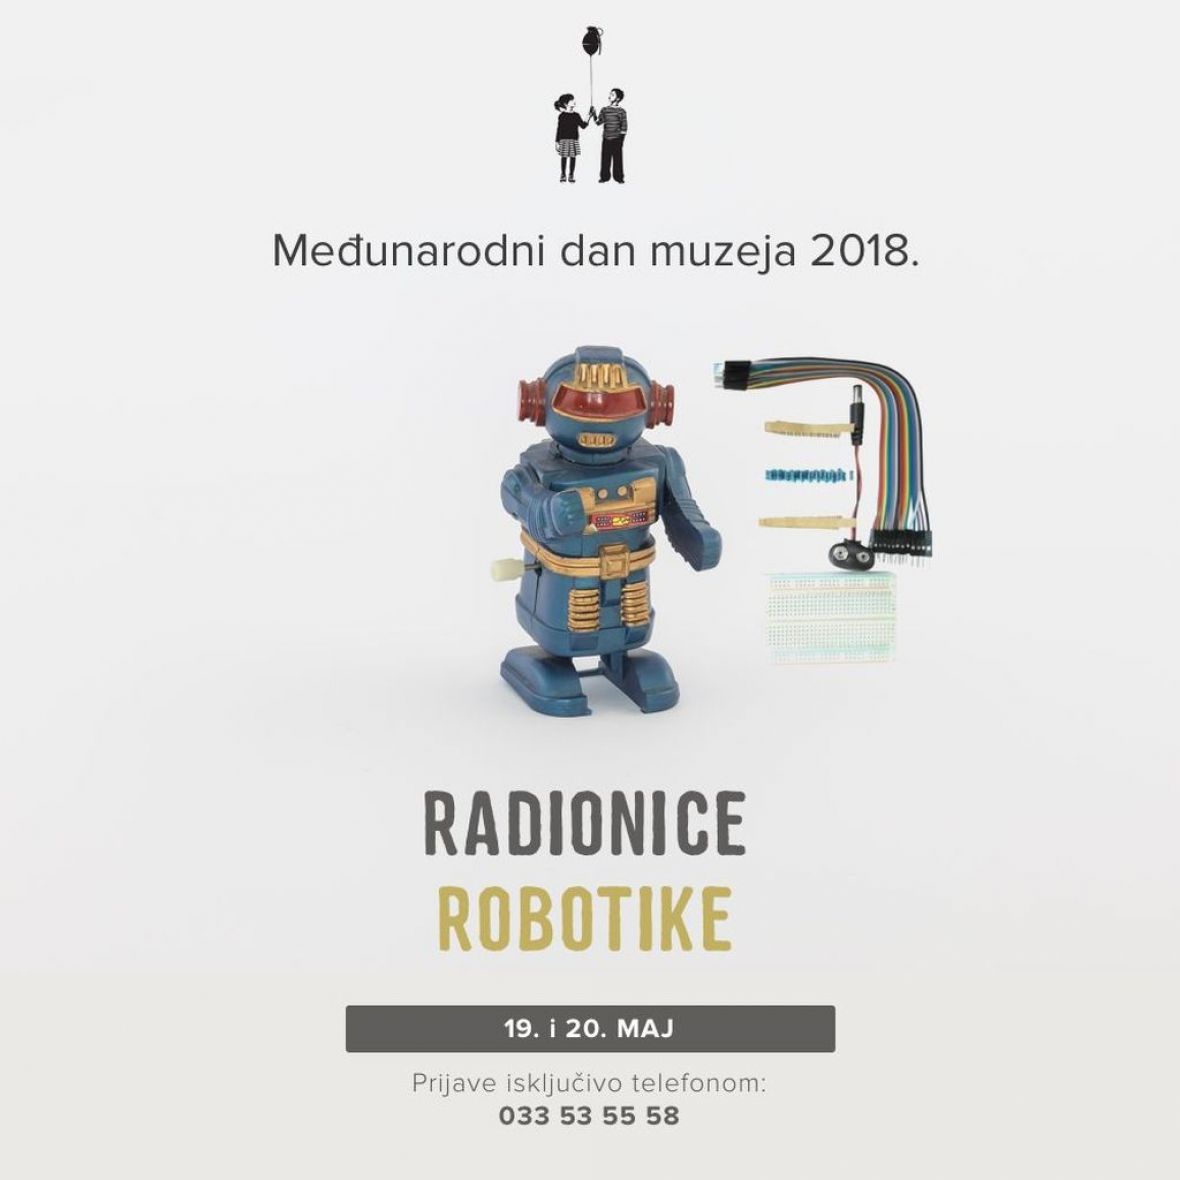 MRD_Radionice_robotike.jpg - undefined